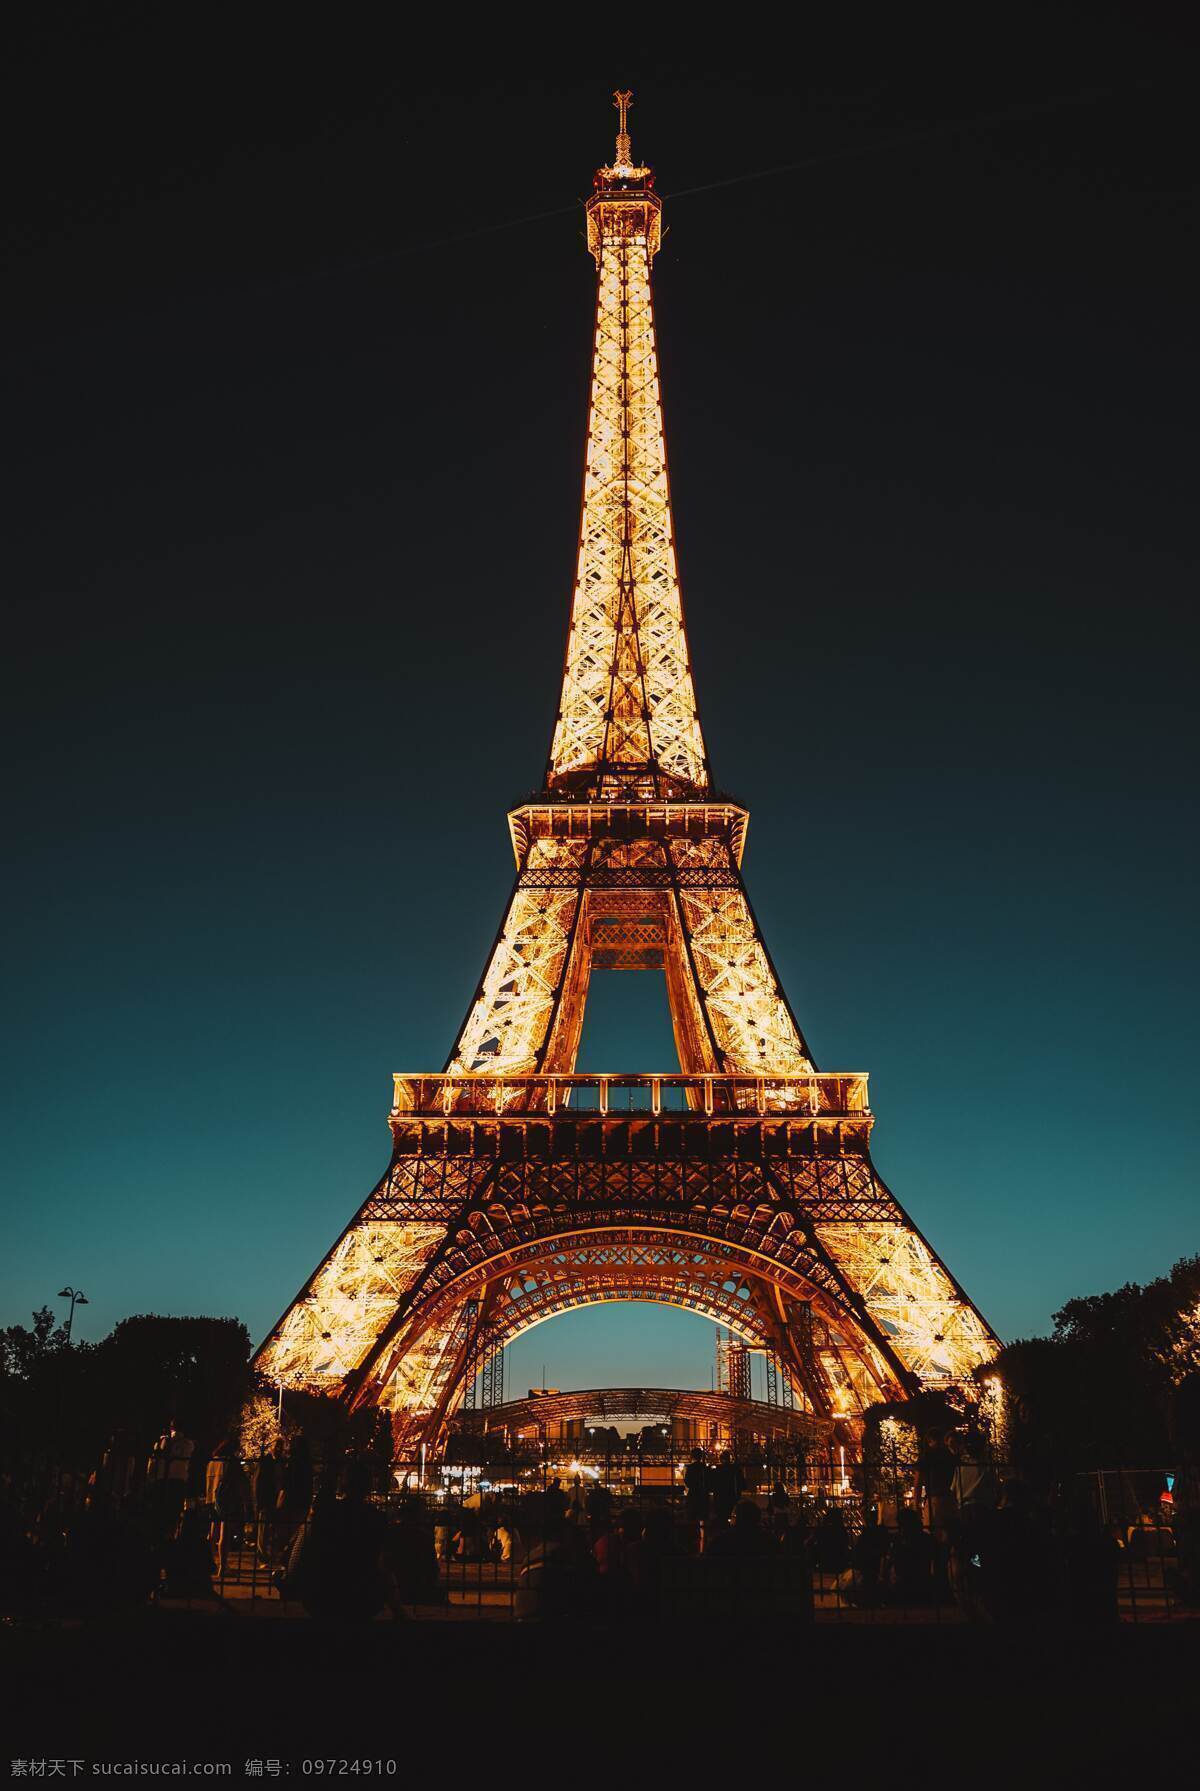 埃菲尔铁塔 法国地标 地标建筑 世界建筑 古建筑 法国旅游 世界旅游 世界地理 环游世界 旅游杂志 建筑园林 建筑摄影